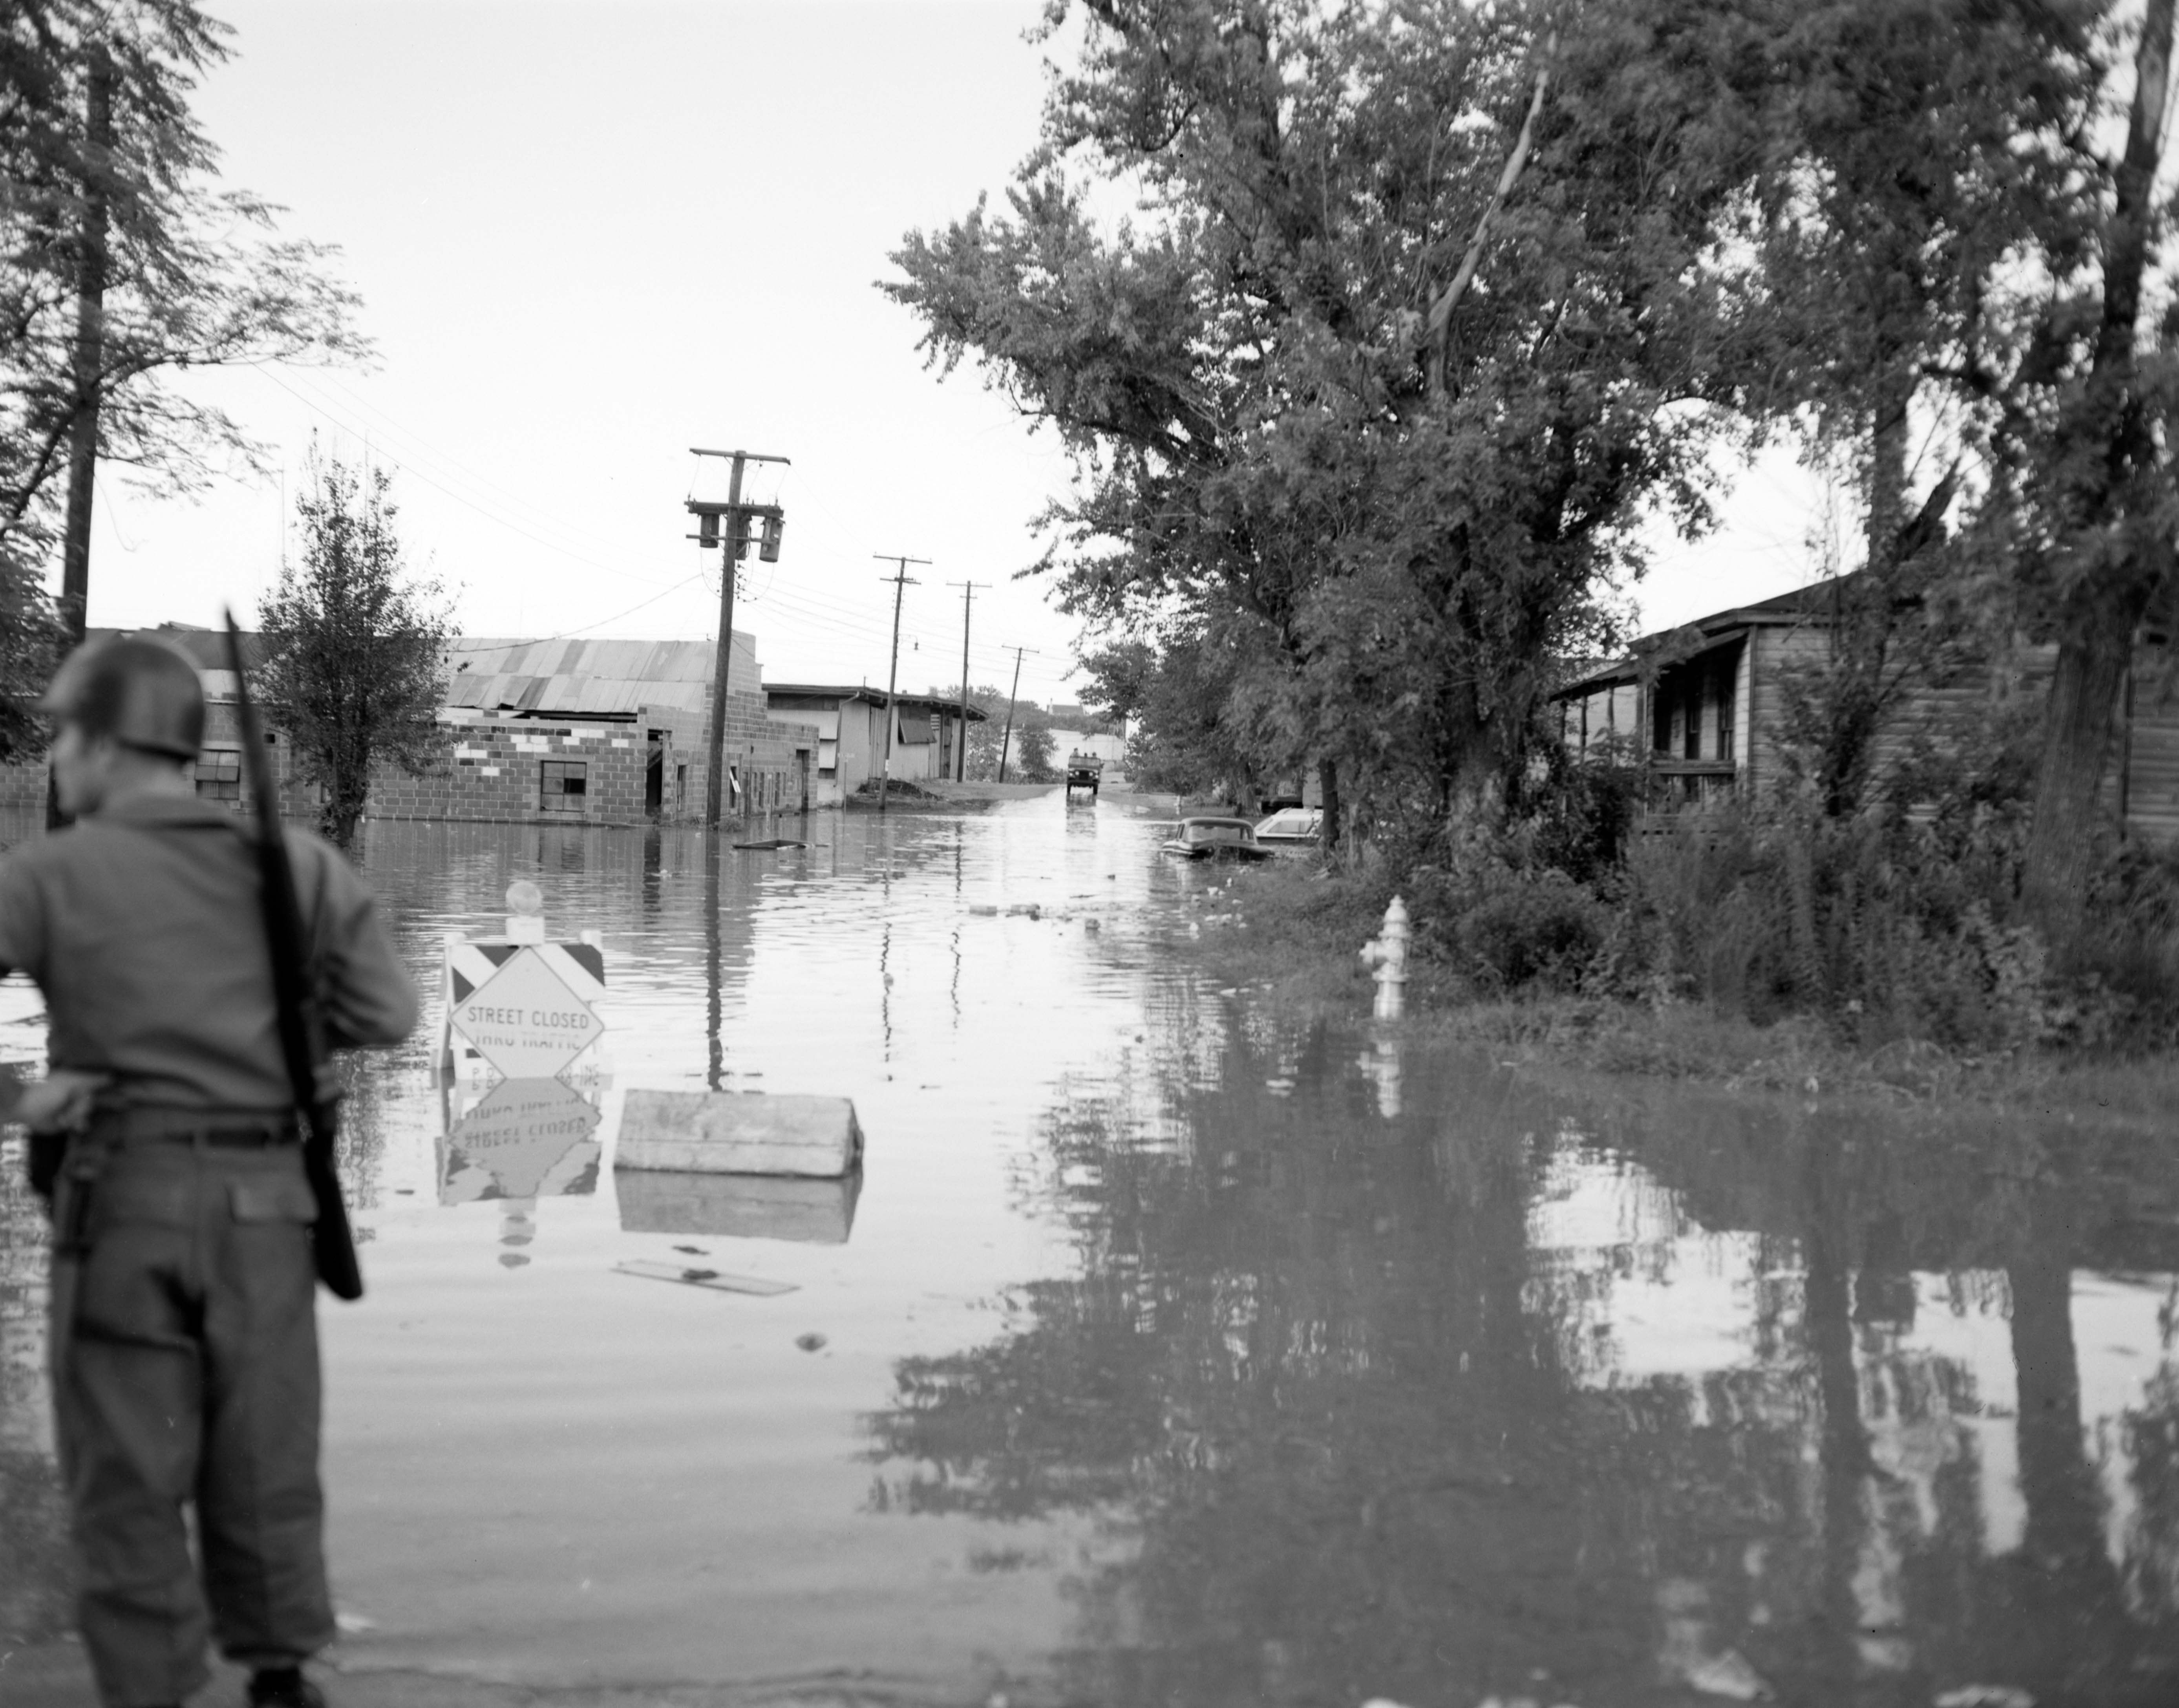 Lụt lội (Flood): Mùa mưa đã đến và lụt lội đang là mối lo lớn cho cả cộng đồng. Hình ảnh về Lụt lội sẽ giúp chúng ta cảnh giác với những hiểm họa từ thiên nhiên, đồng thời nâng cao nhận thức về cách ứng phó với đợt lụt tới. Hãy cùng xem và chia sẻ hình ảnh để giúp nhau trong việc phòng chống các tai biến.